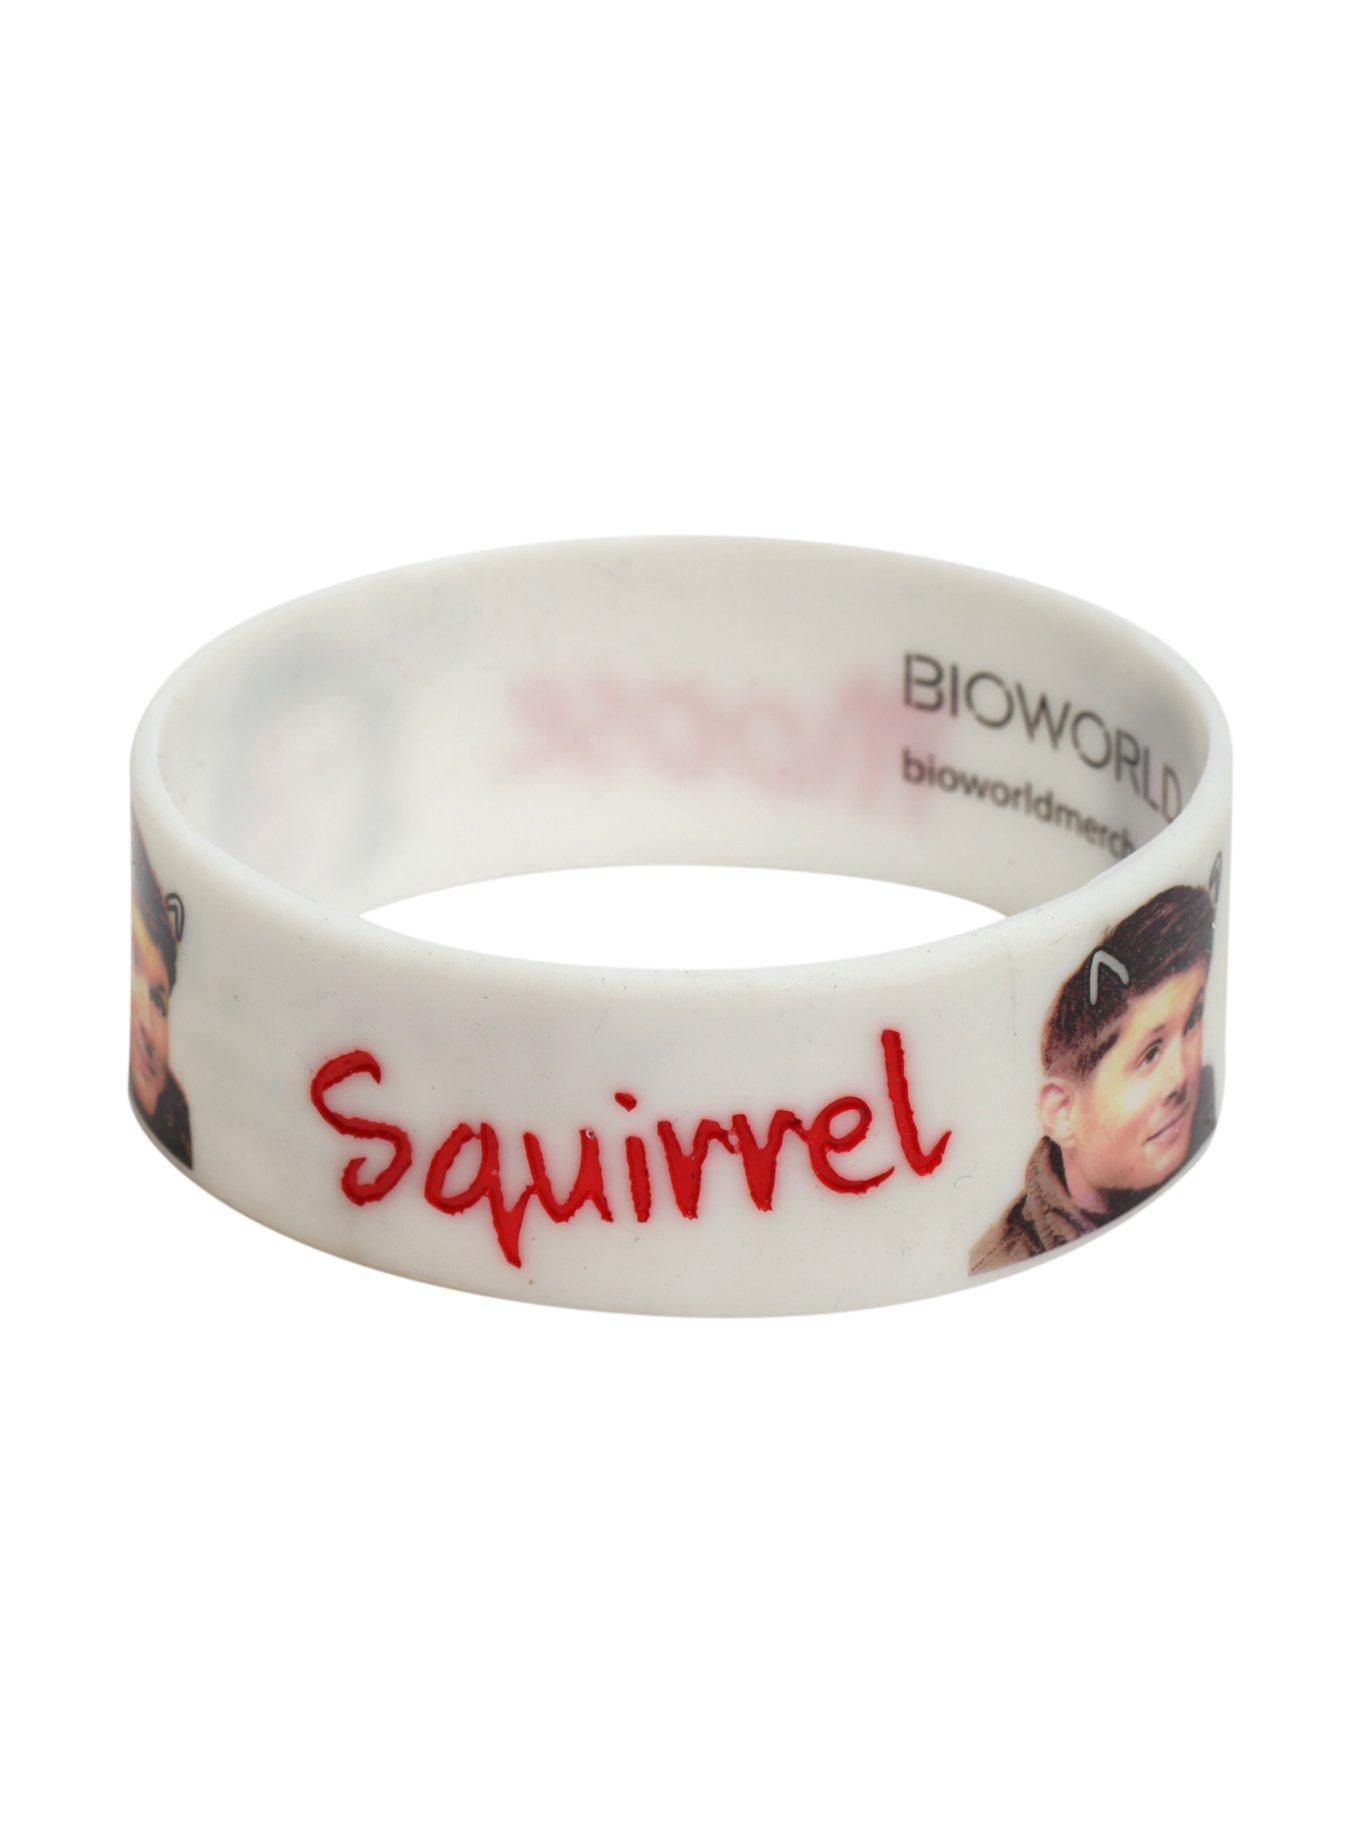 Supernatural Moose & Squirrel Rubber Bracelet, , alternate